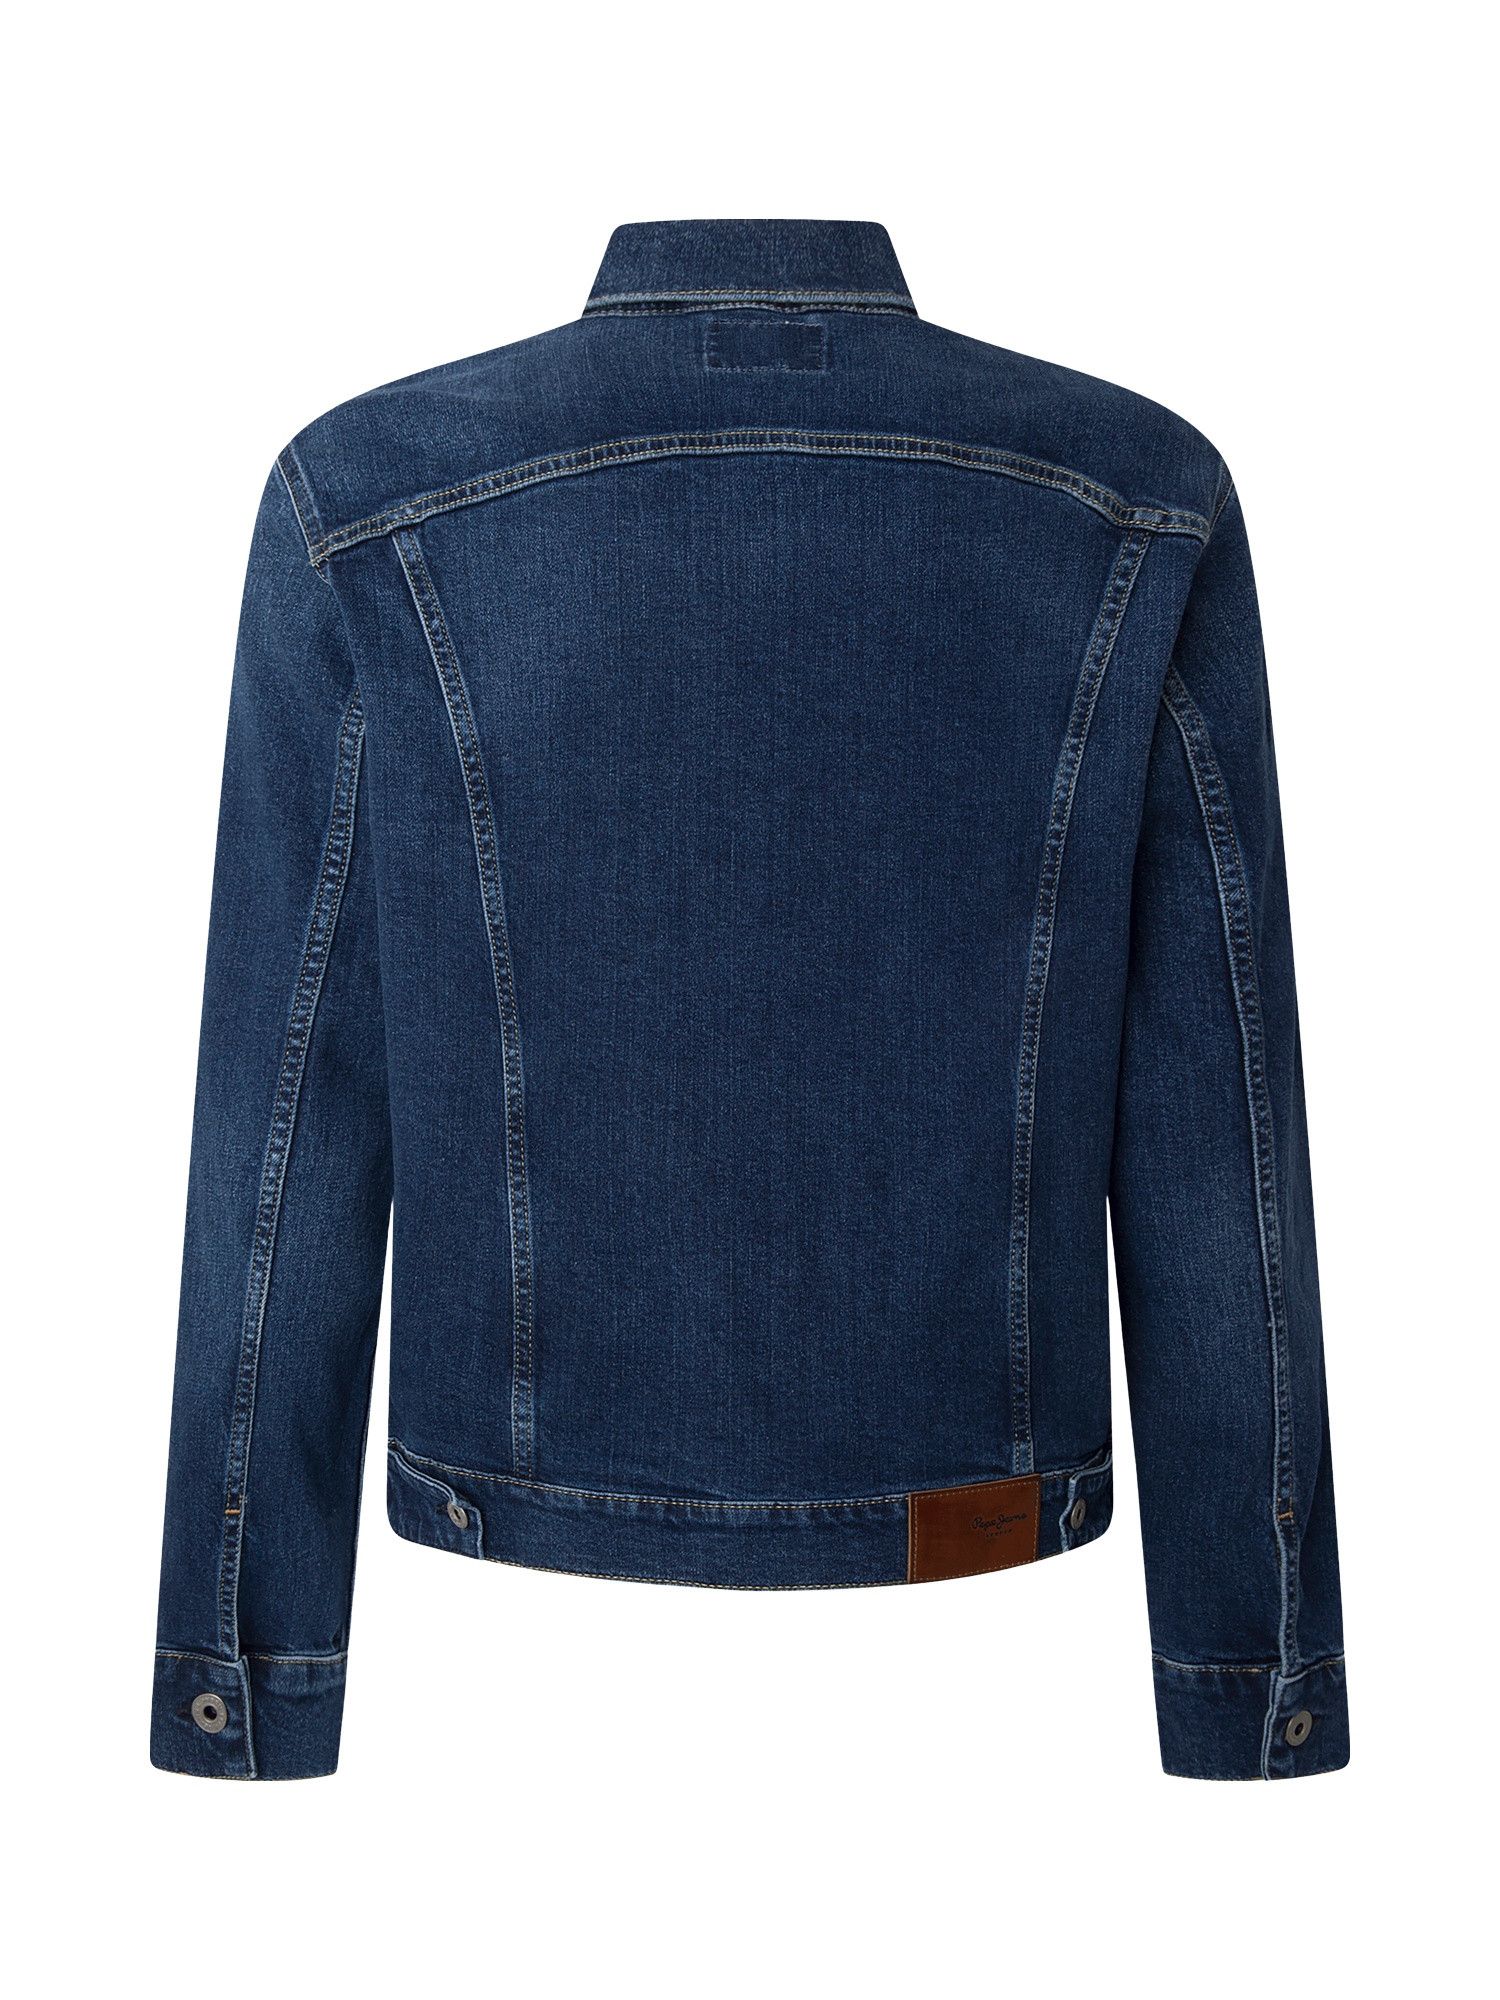 Pepe Jeans - Denim jacket, Denim, large image number 1